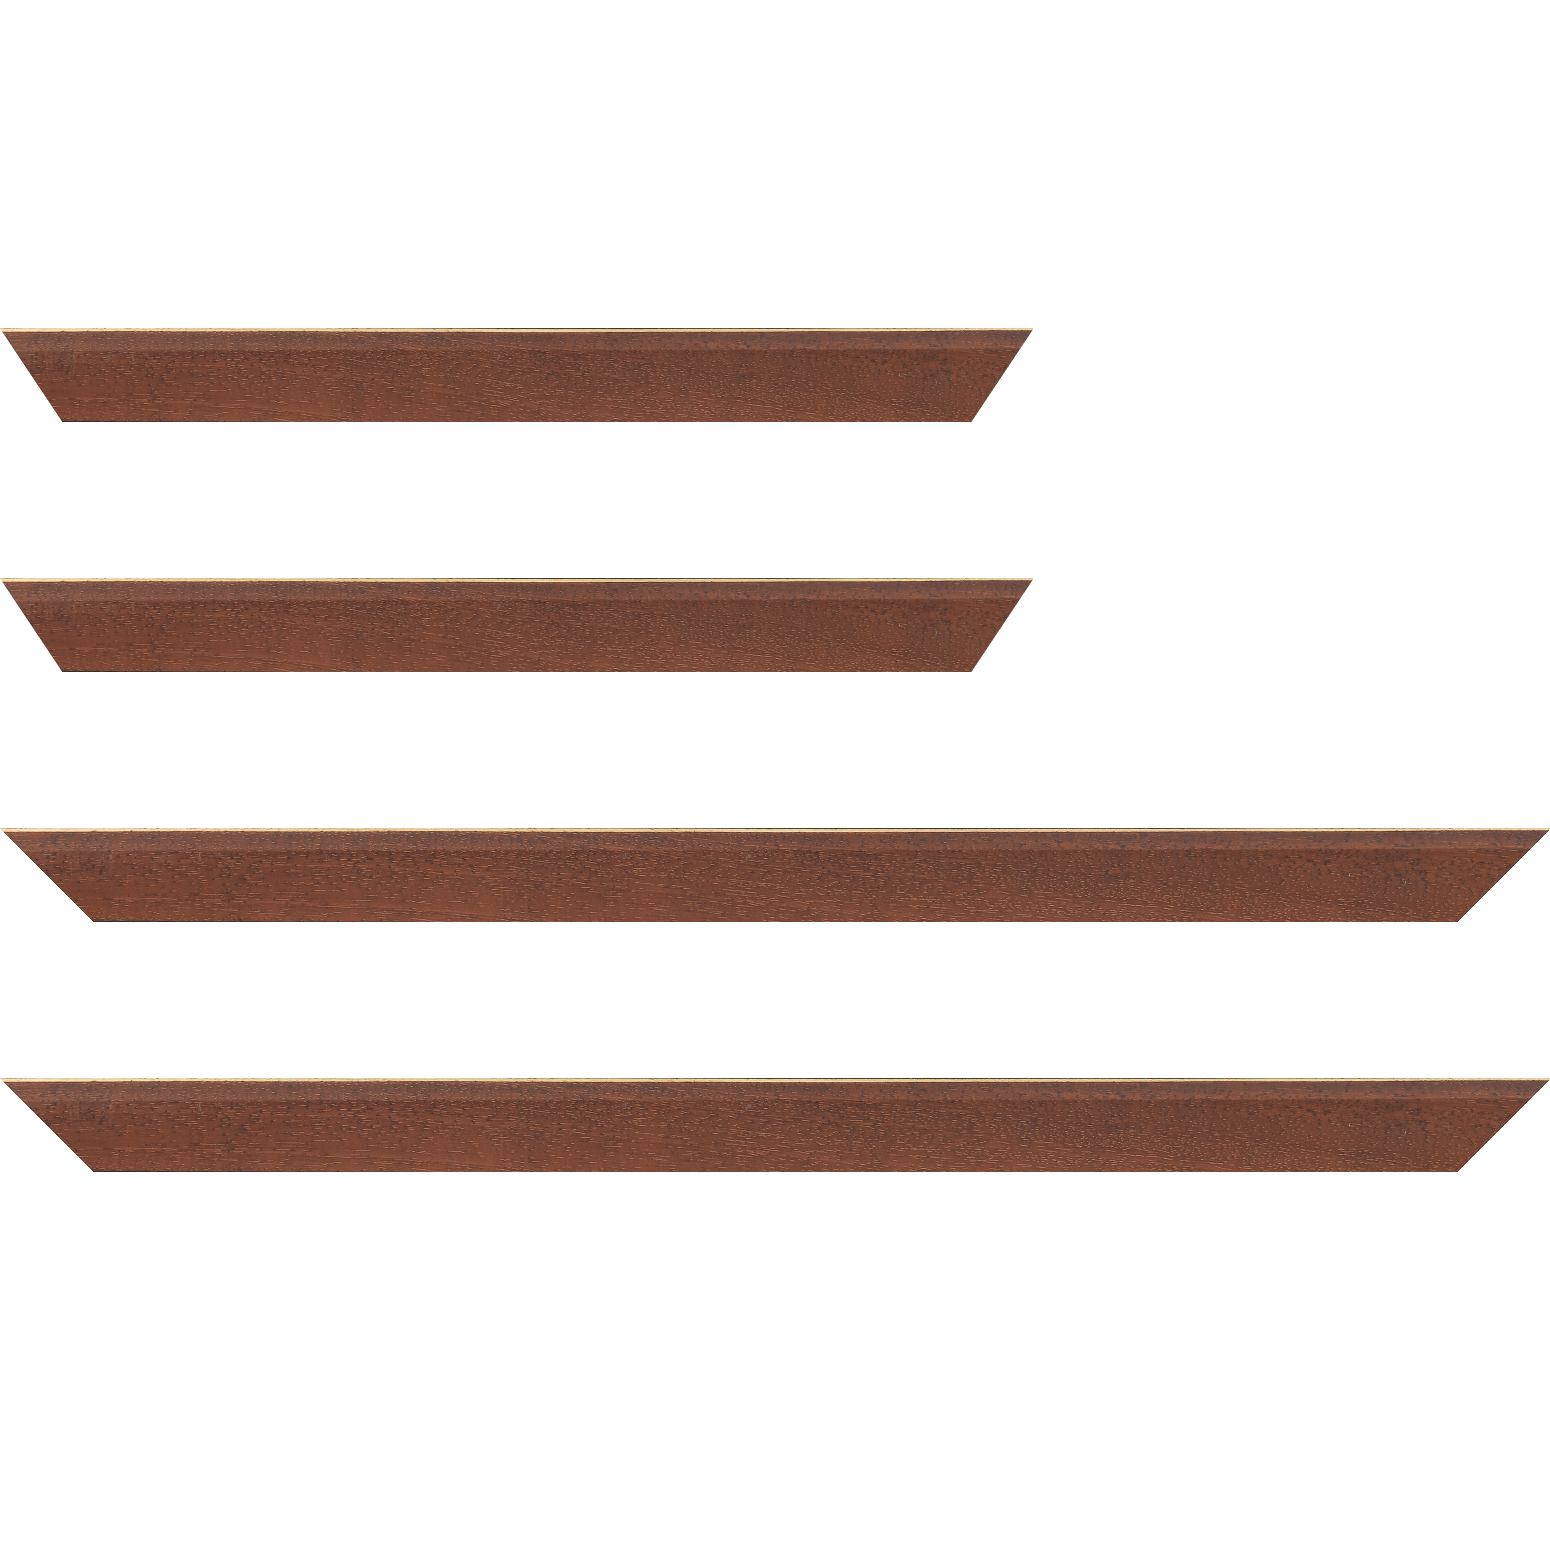 Baguette bois profil plat escalier largeur 3cm couleur marron miel satiné filet créme extérieur - 20x60